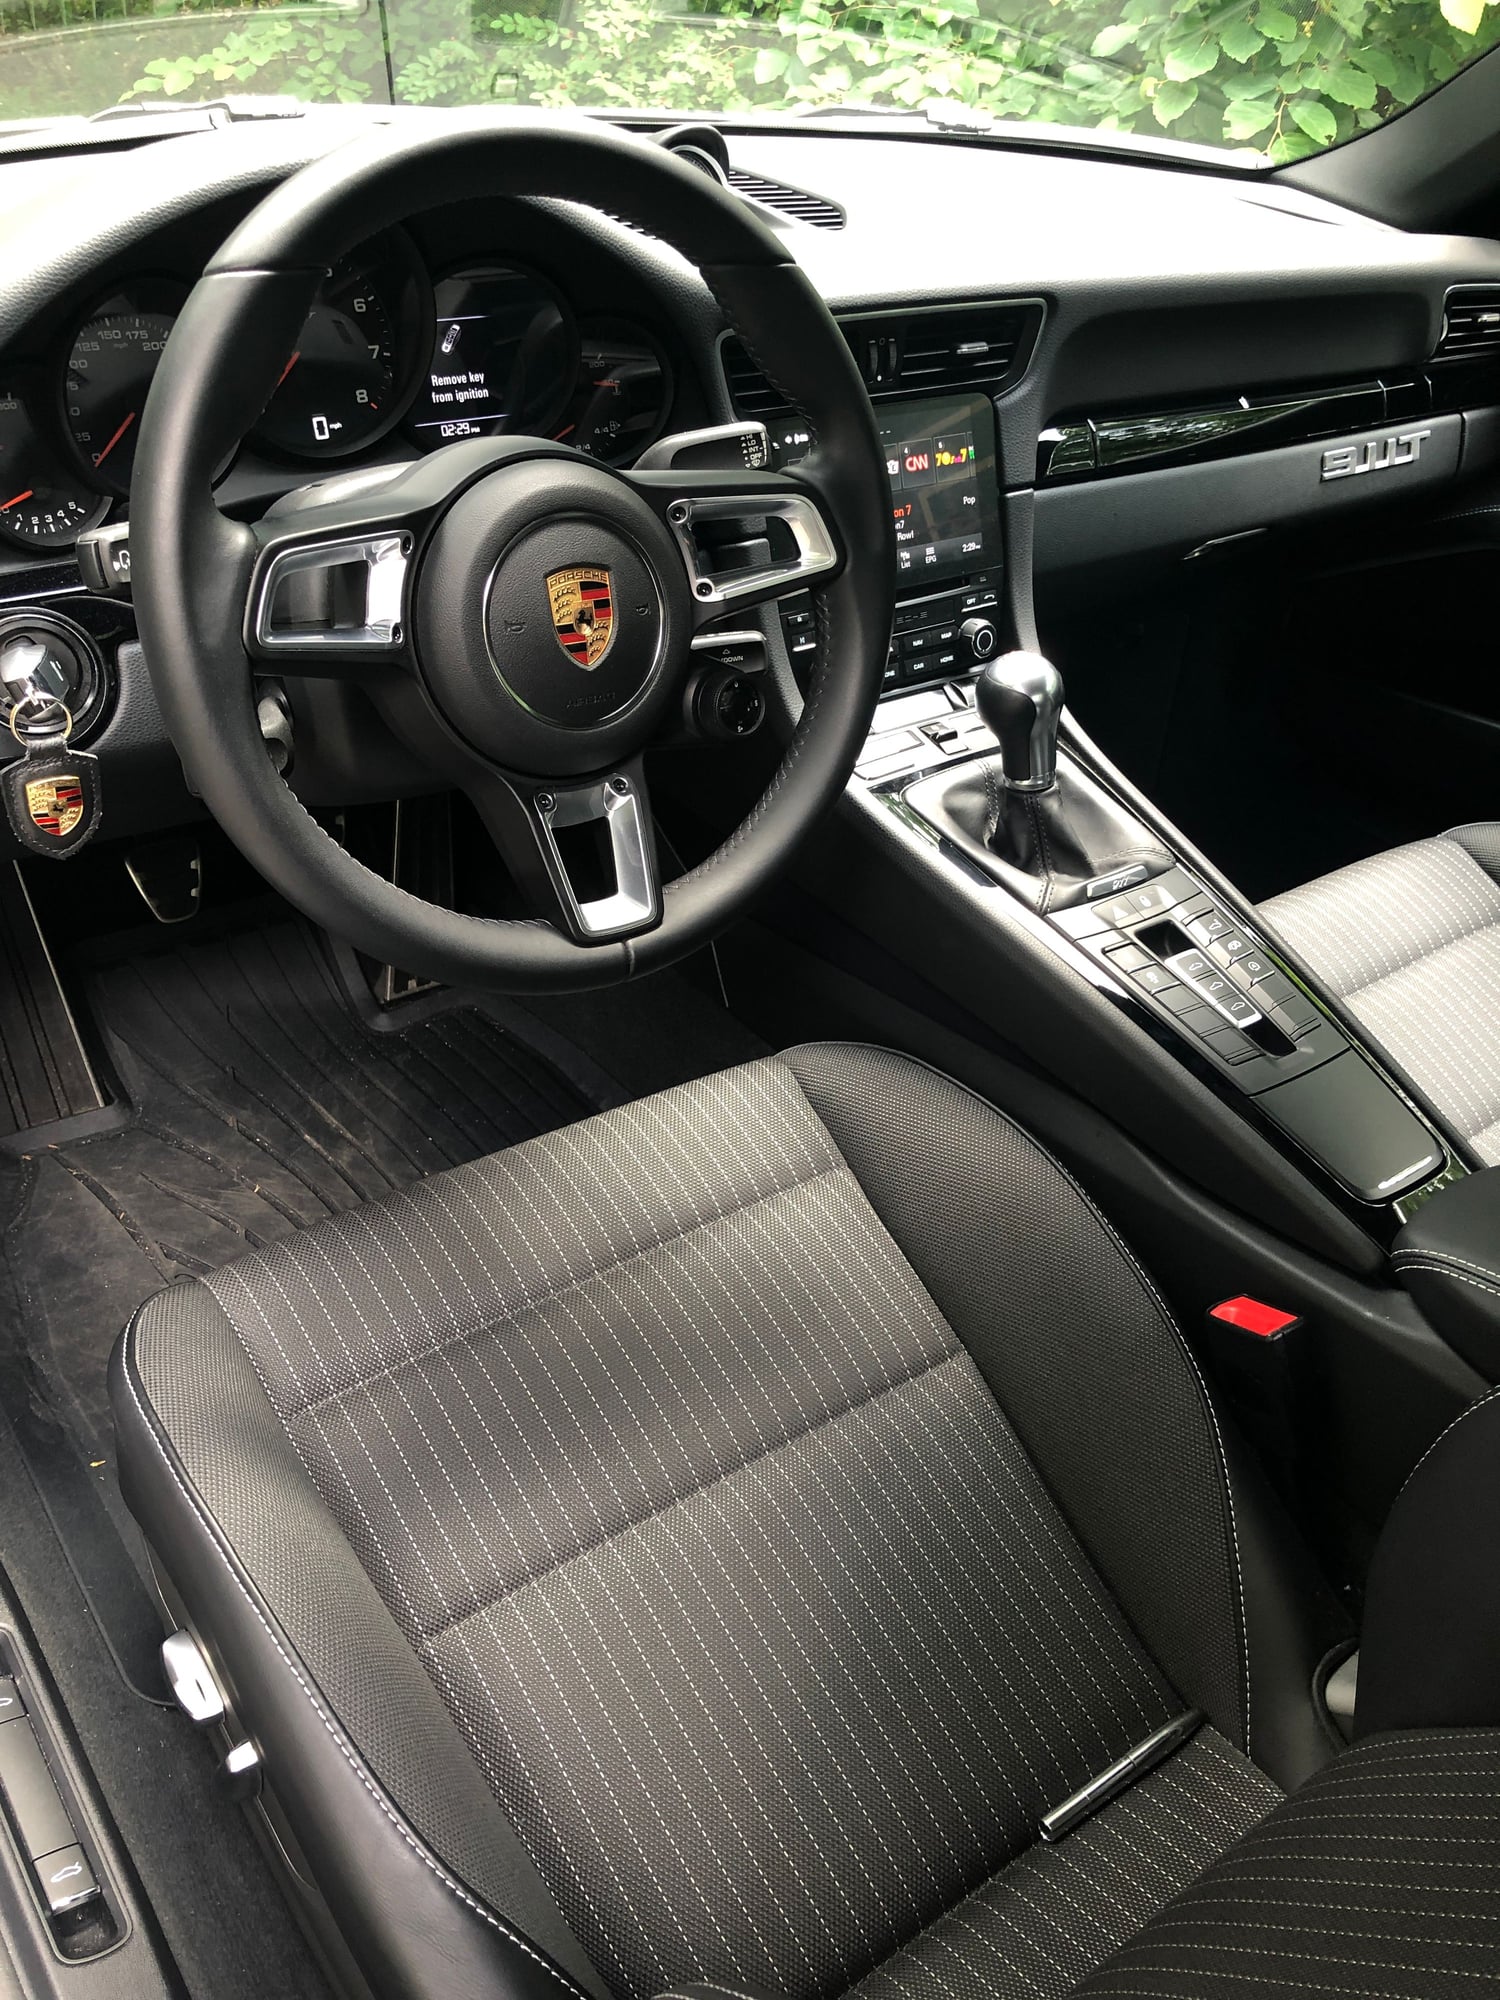 2019 Porsche 911 - 2019 Porsche 911 Carrera T, CPO Warranty till 2025 - Used - VIN WPOAA2A98KS103569 - 6,600 Miles - 6 cyl - 2WD - Manual - Coupe - Silver - Sherman, CT 06784, United States